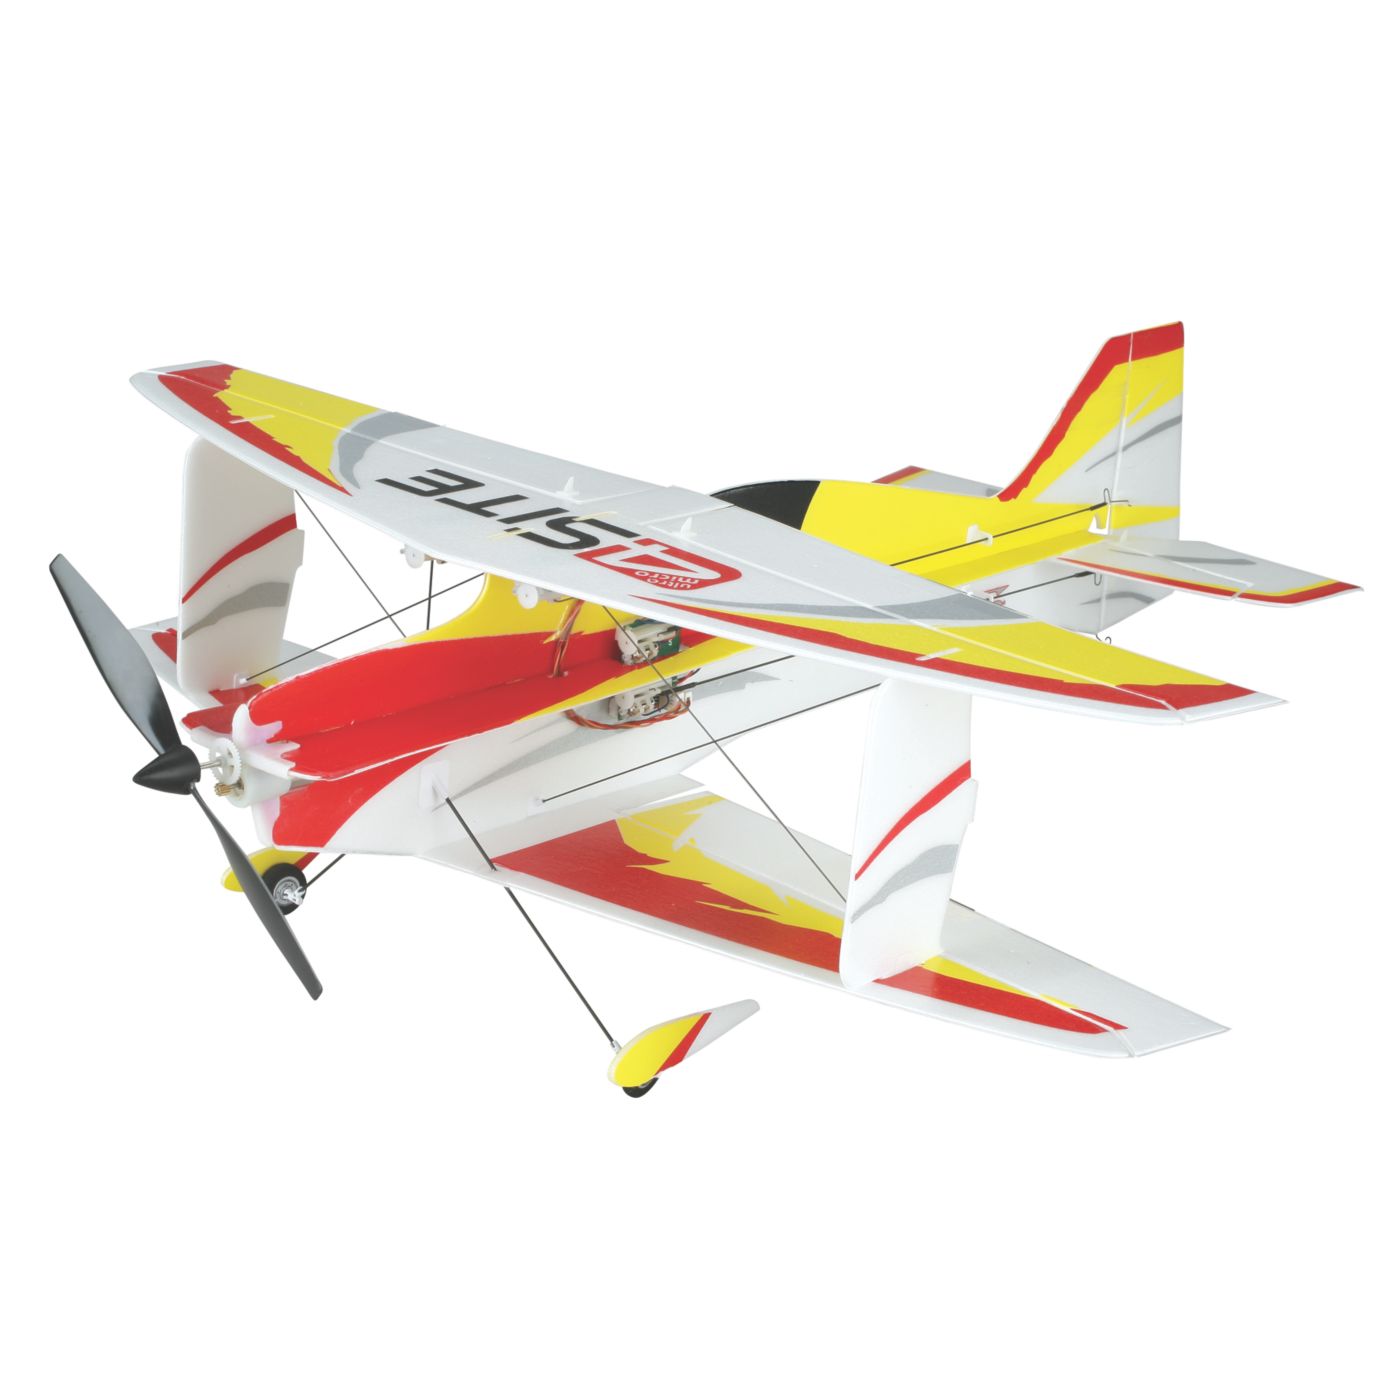 Ультра микро. Радиоуправляемый самолет mlp6dsm. Eflite 4 site Ultra Micro. Ultra Micro модели самолетов. Авиамодель Micro Angel.